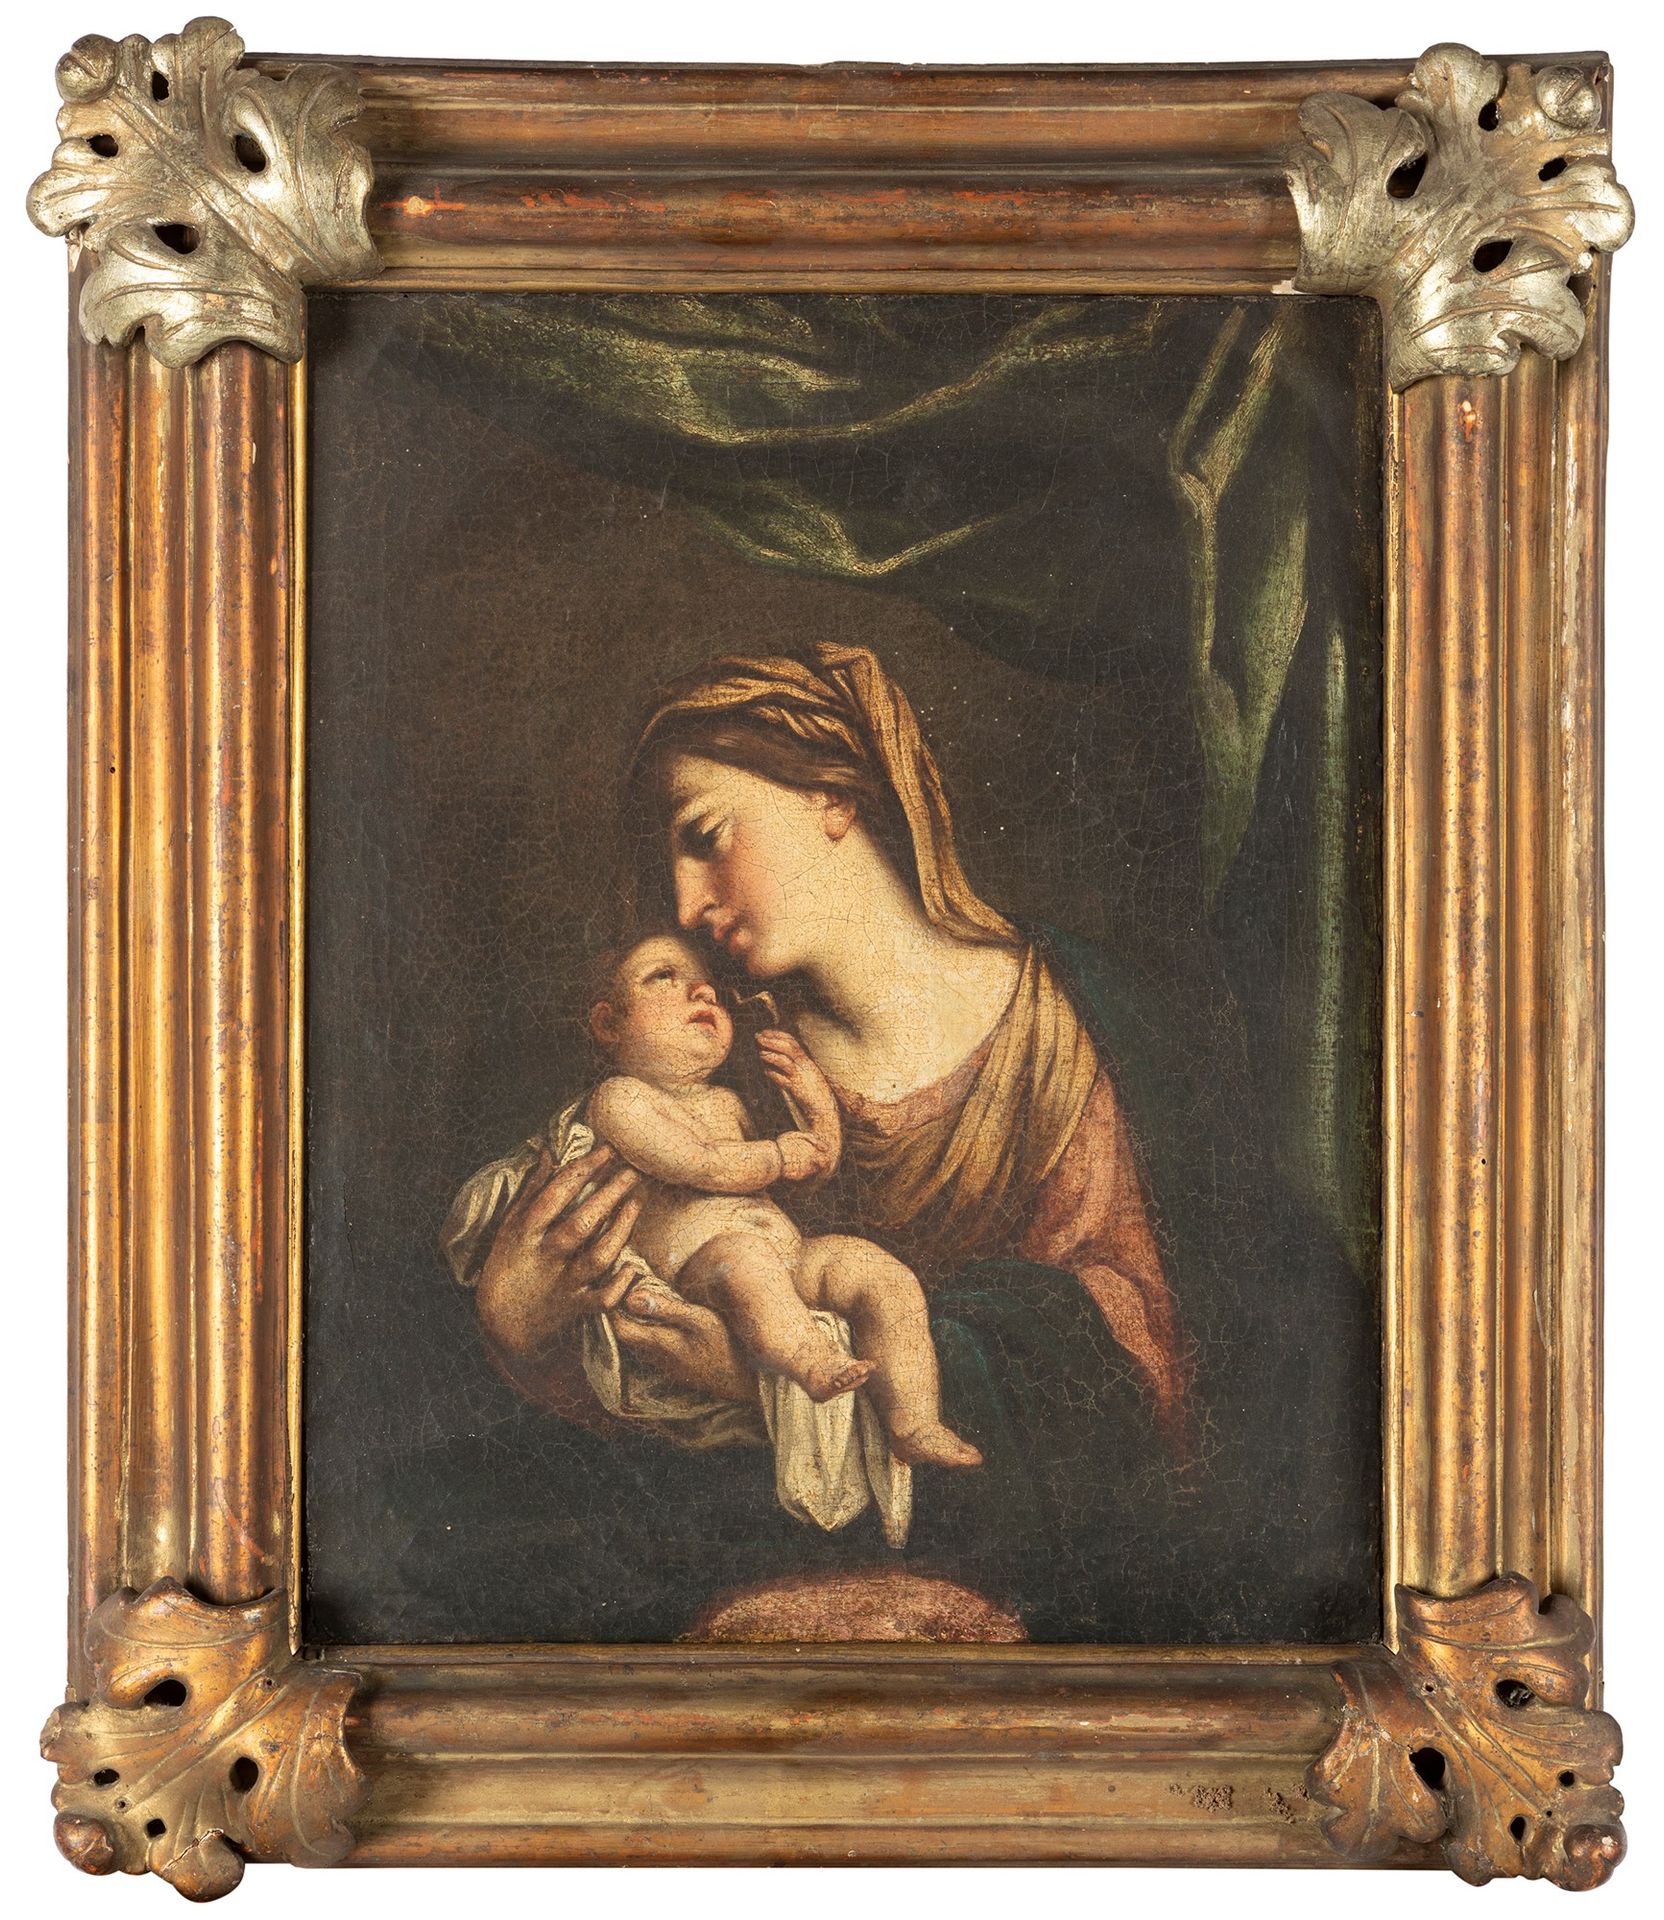 Scuola romana, fine secolo XVII - inizi secolo XVIII 带孩子的圣母和背景中的绿色帷幔

布面油画
43.5 &hellip;